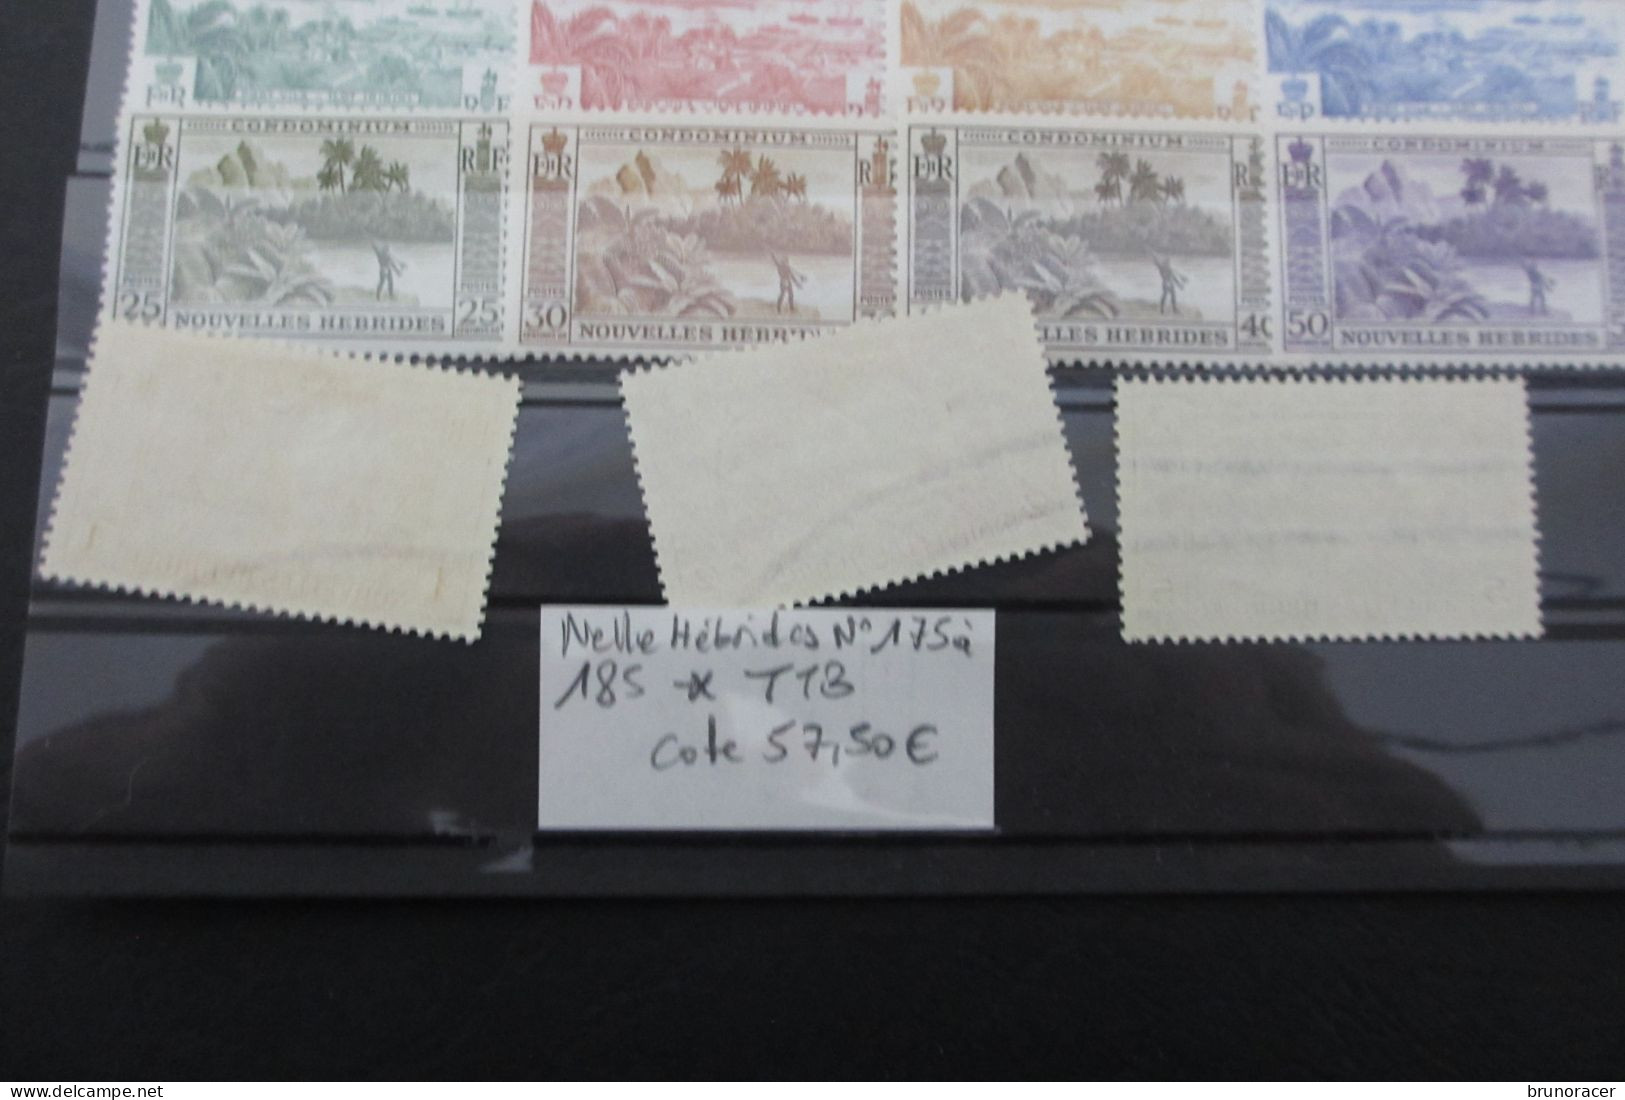 Nelle HEBRIDES N°175 à 187 NEUF* TB COTE 57,50 EUROS VOIR SCANS - Unused Stamps